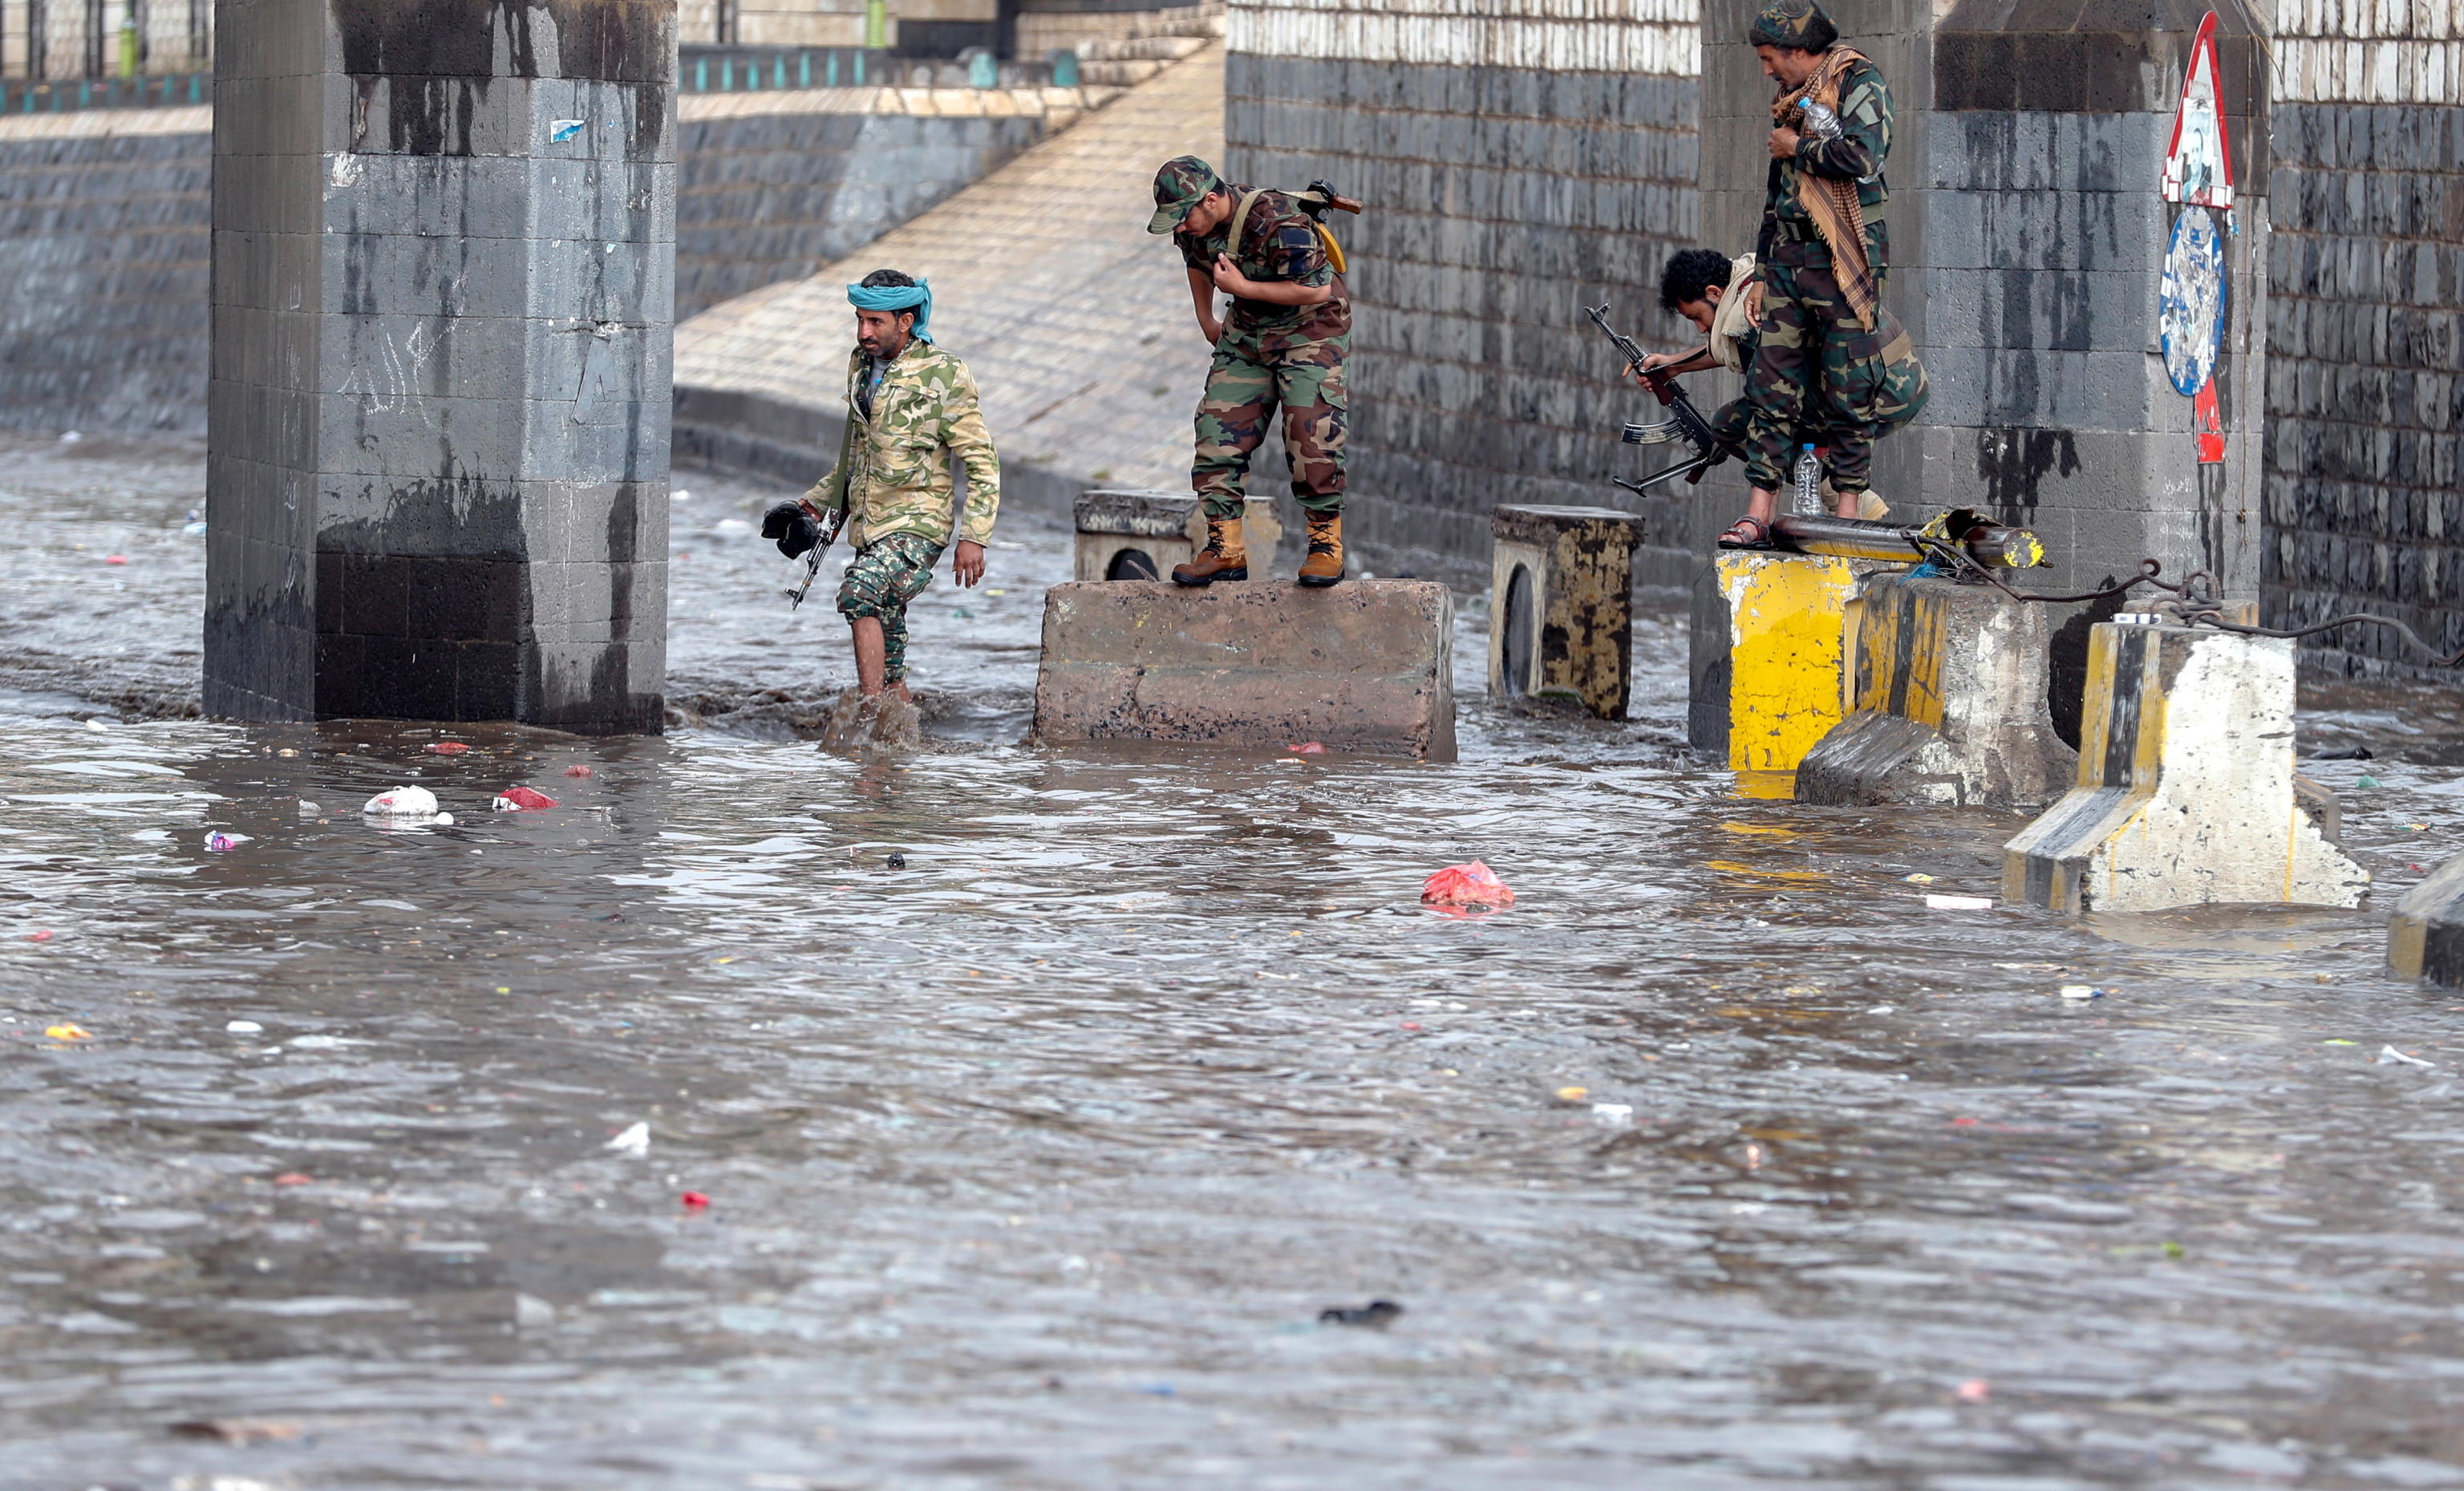 Anche i miliziani Houthi si trovano a fronteggiare le difficoltà dell'inondazione